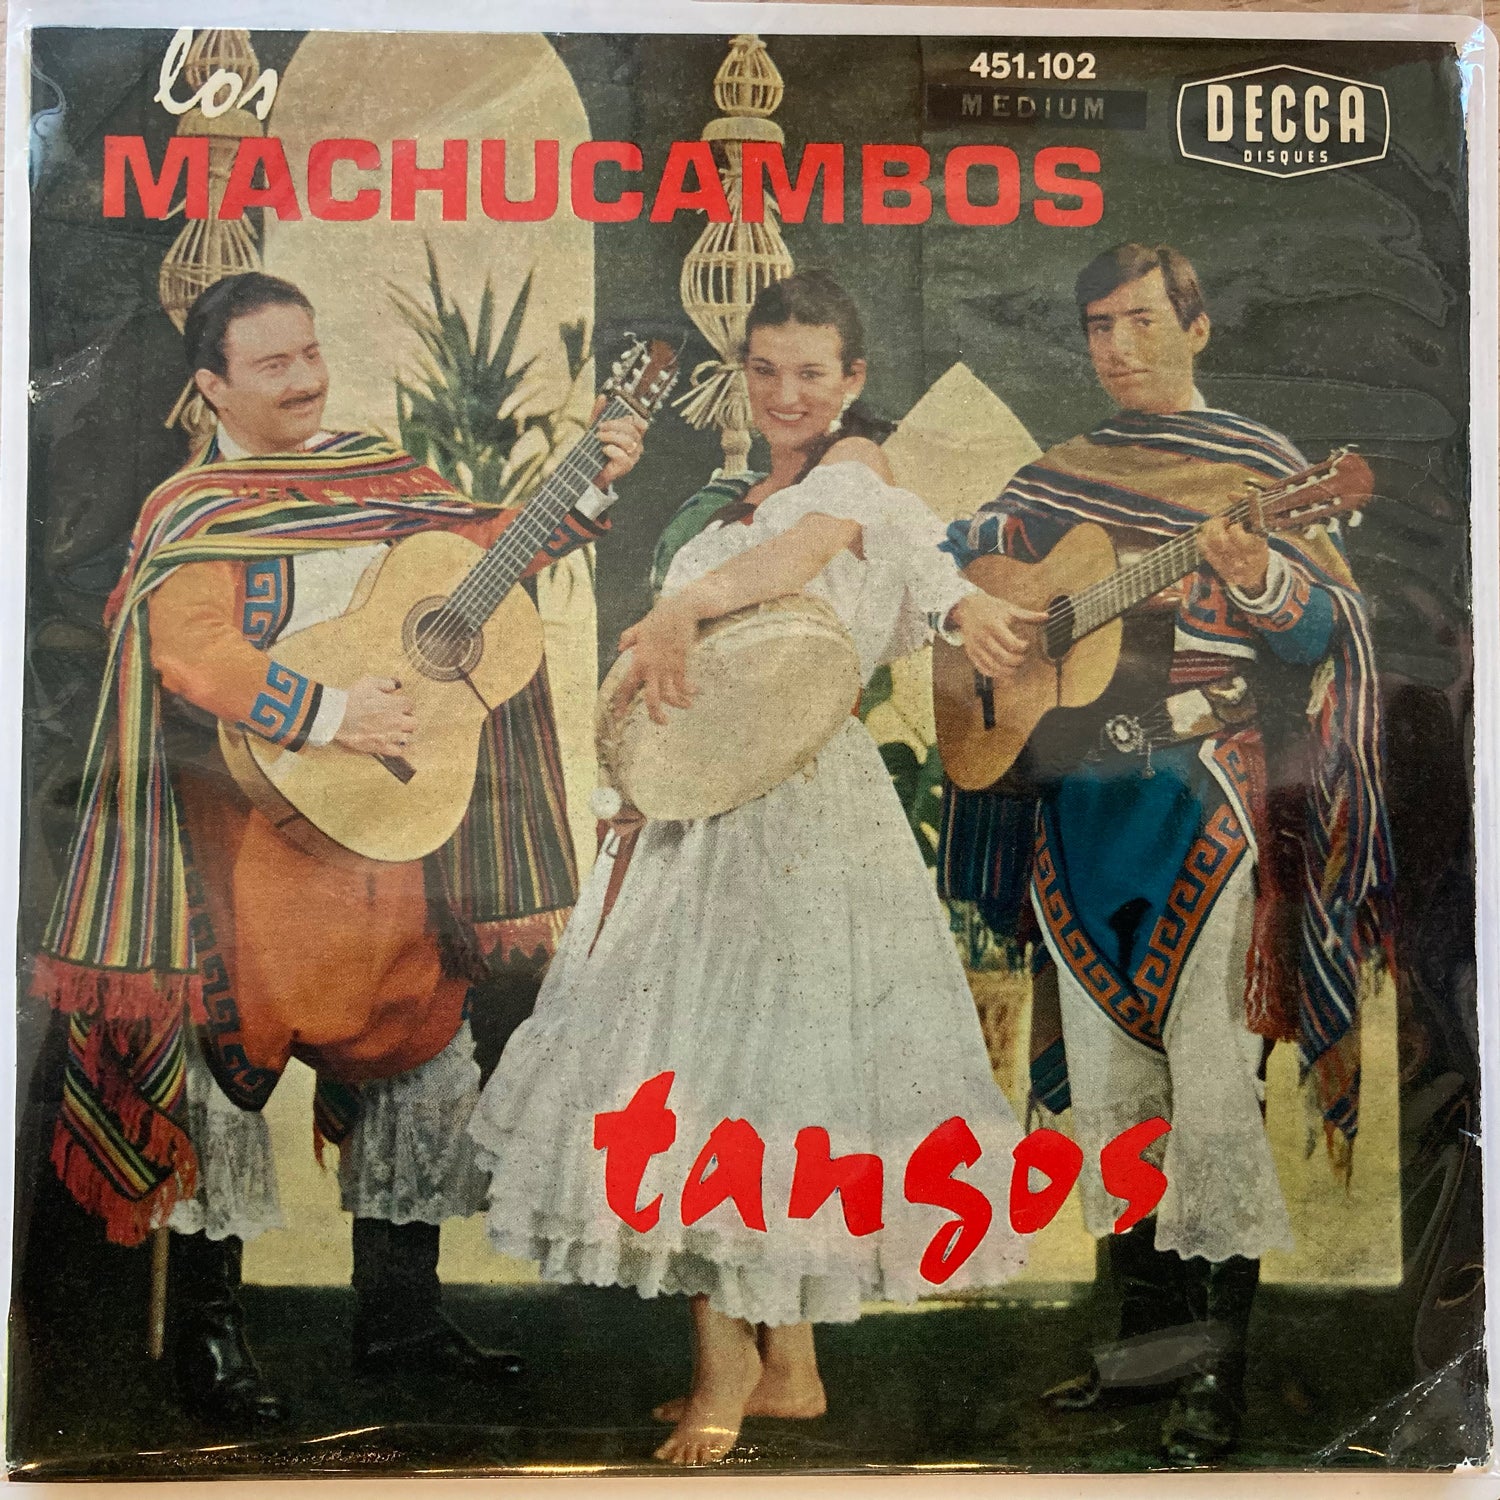 Los Machucambos - Tangos (7")